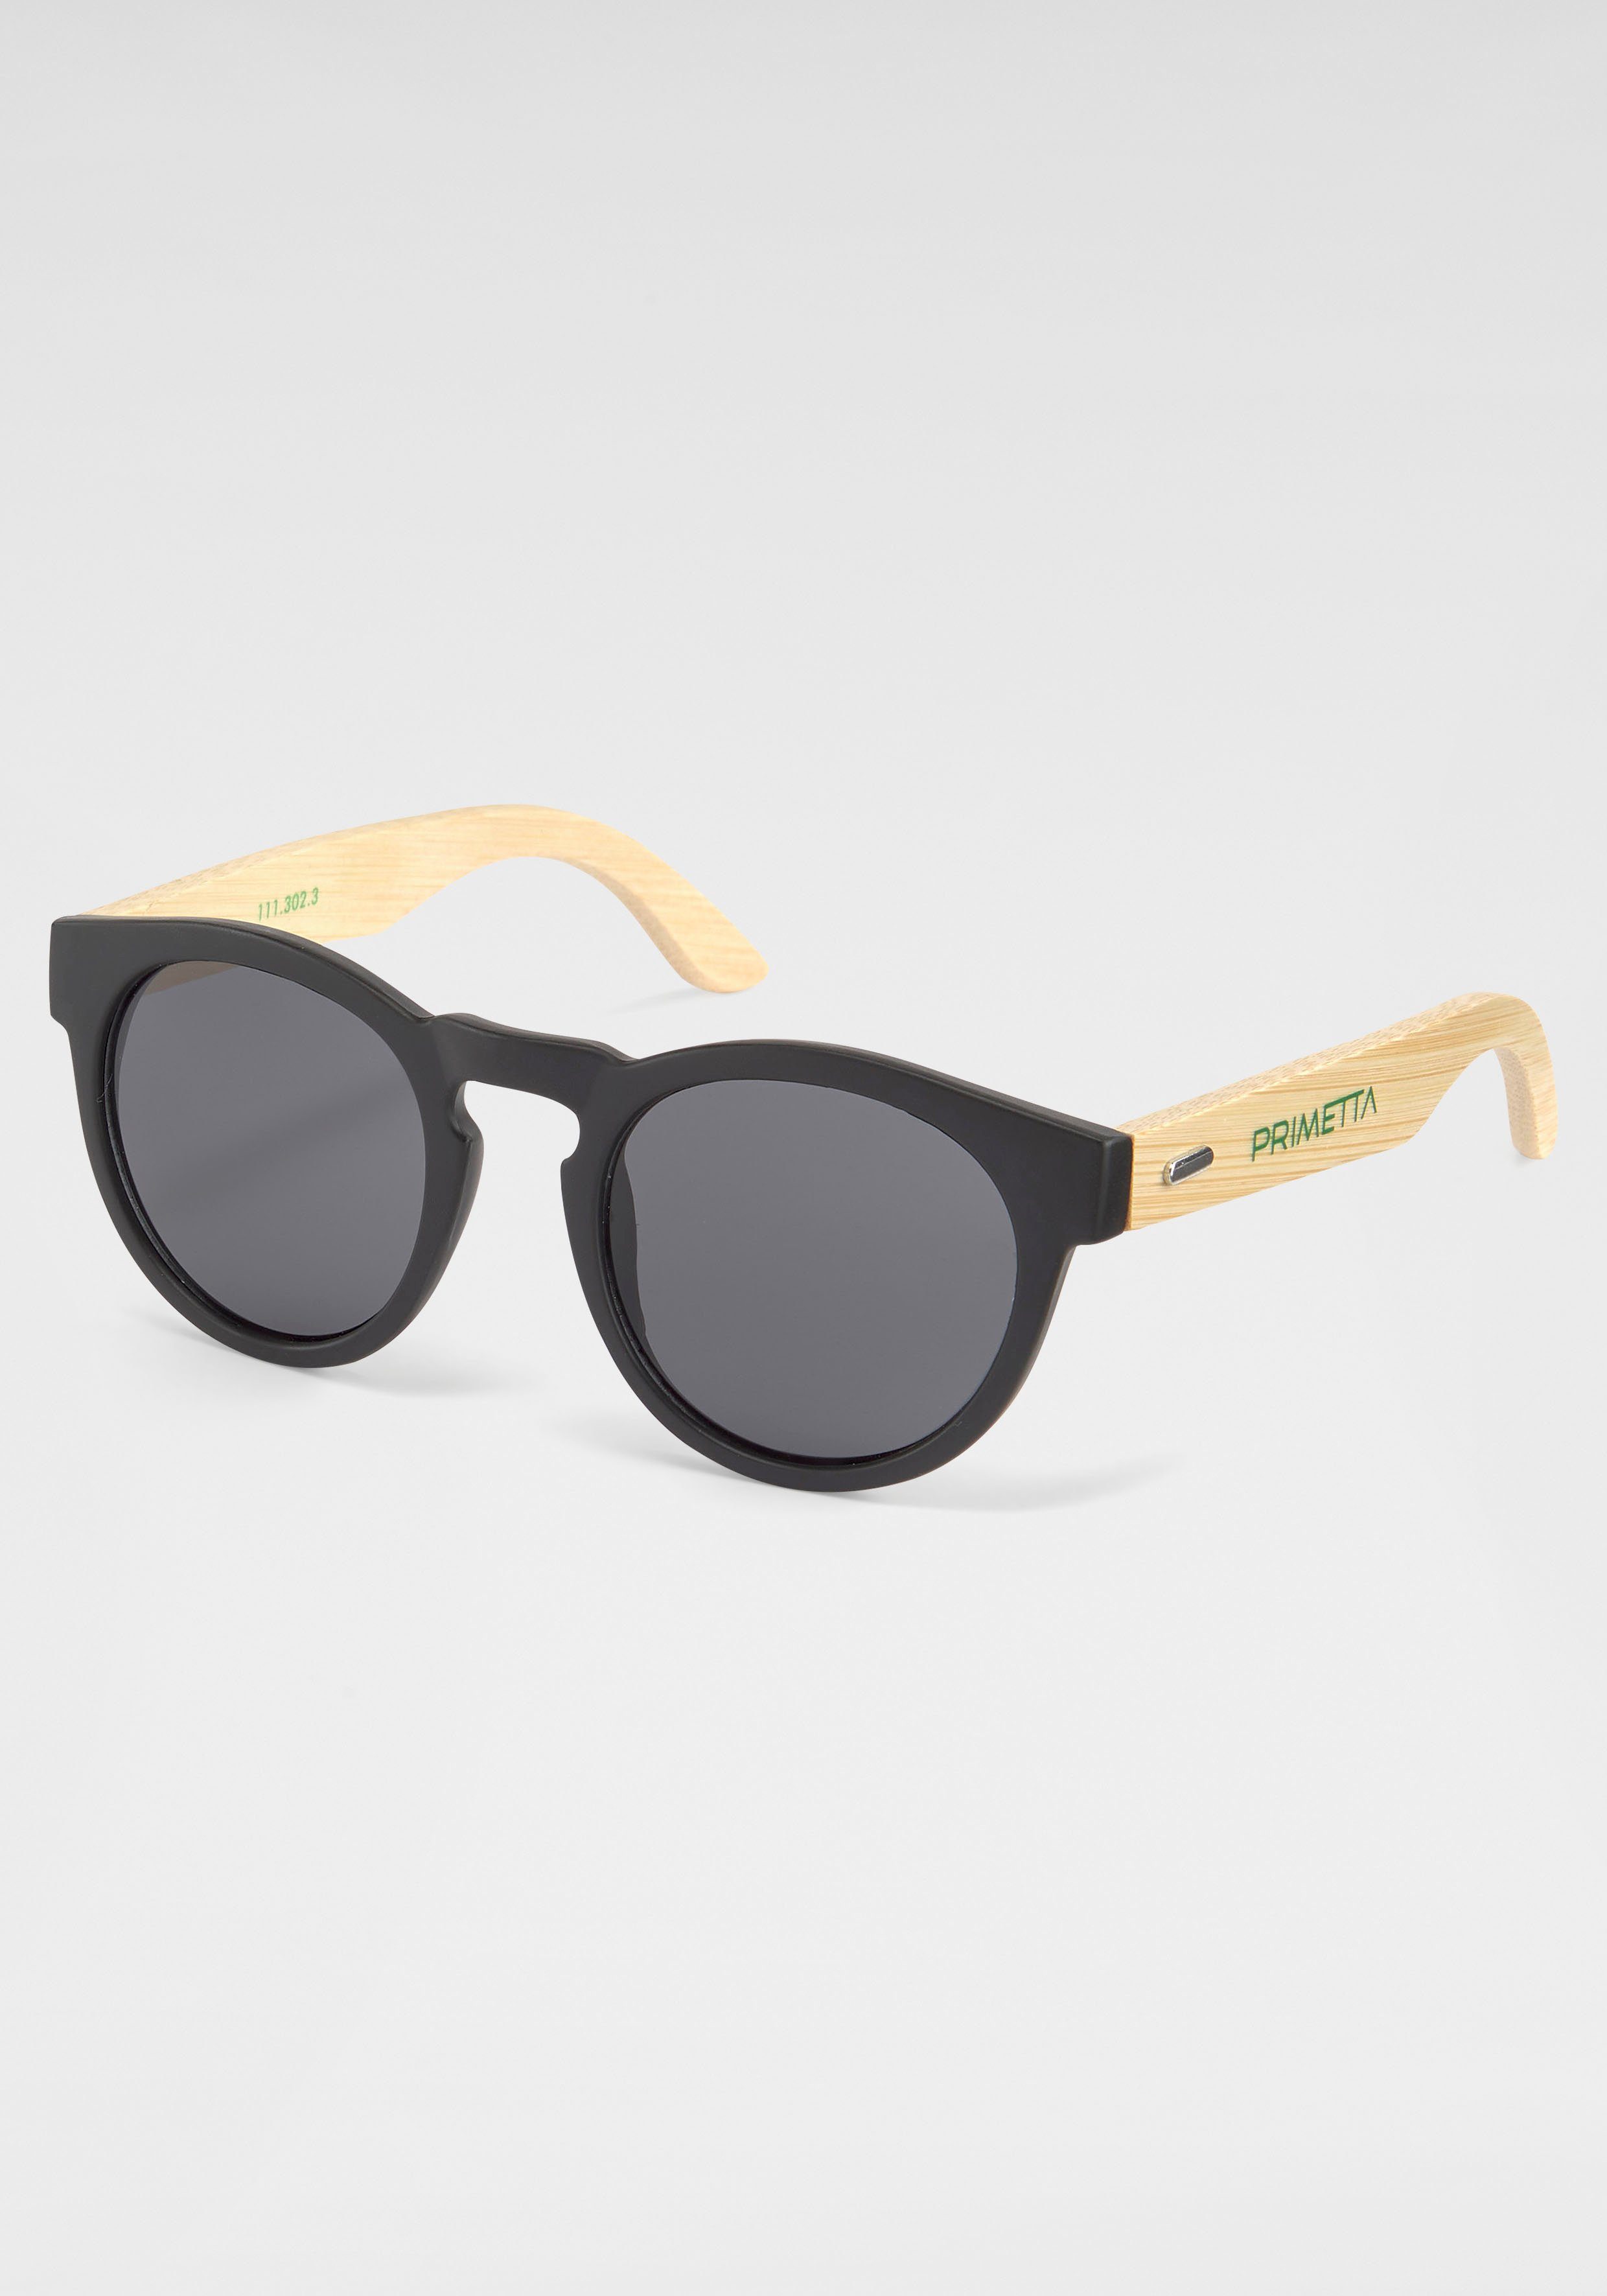 Sonnenbrille PRIMETTA Eyewear schwarz